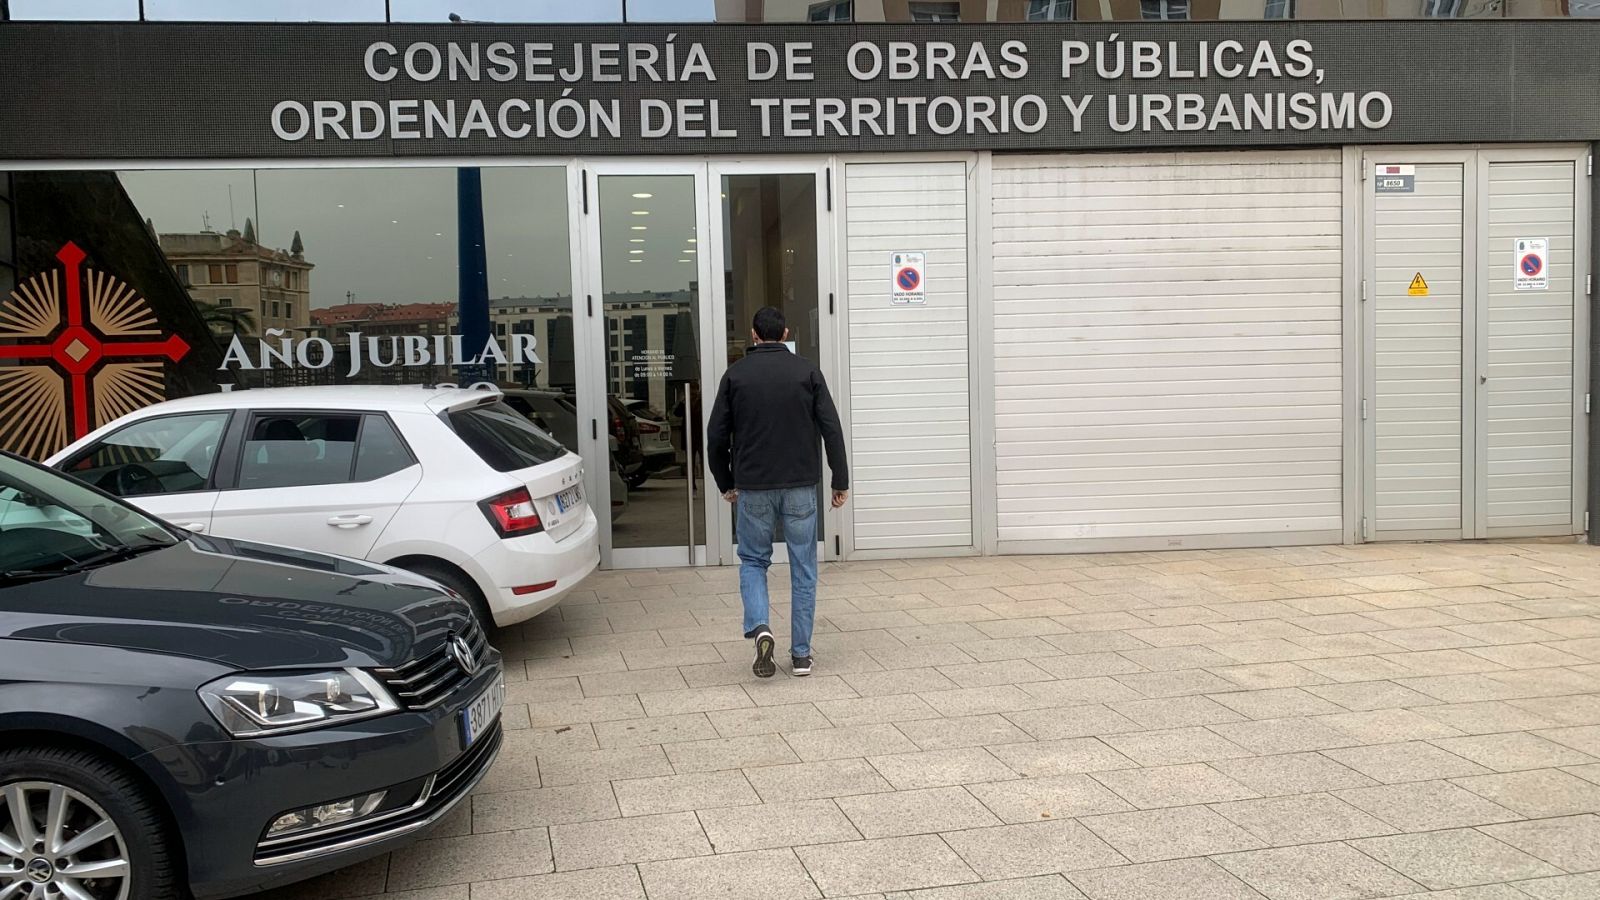 La sede de la Consejería de Obras Públicas de Cantabria